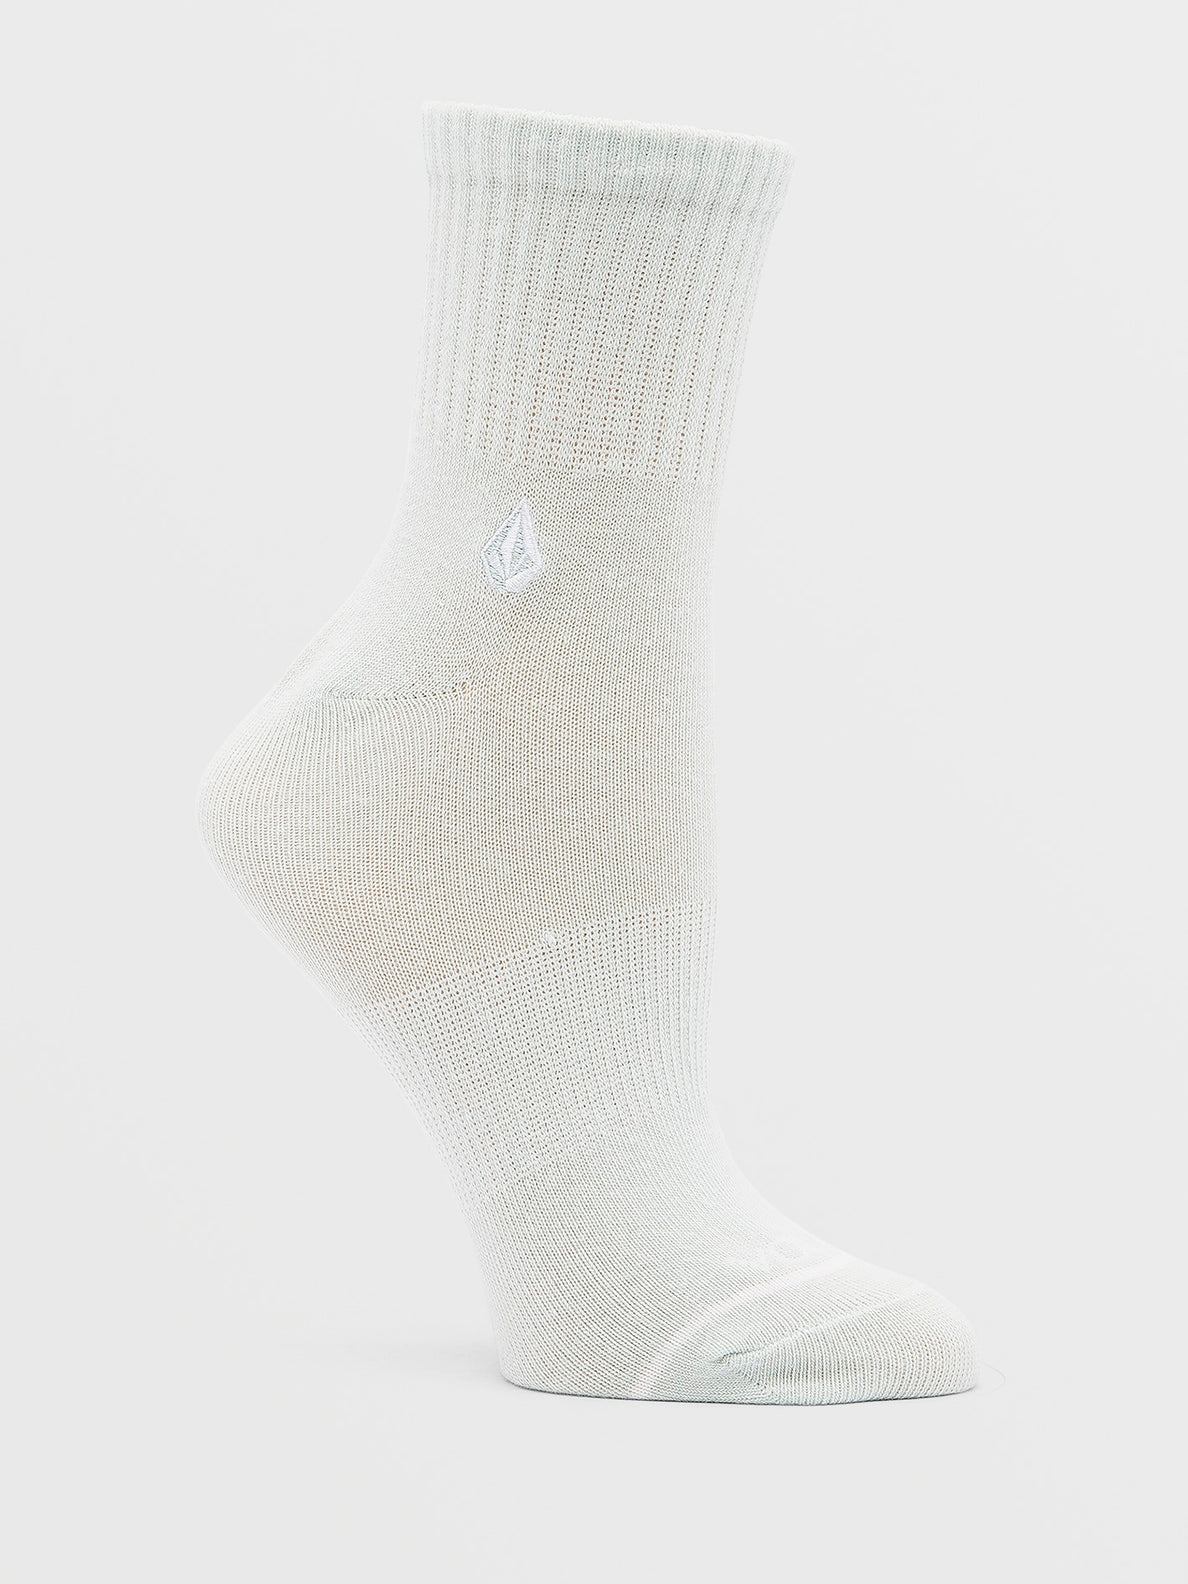 Womens Accessories - Socks